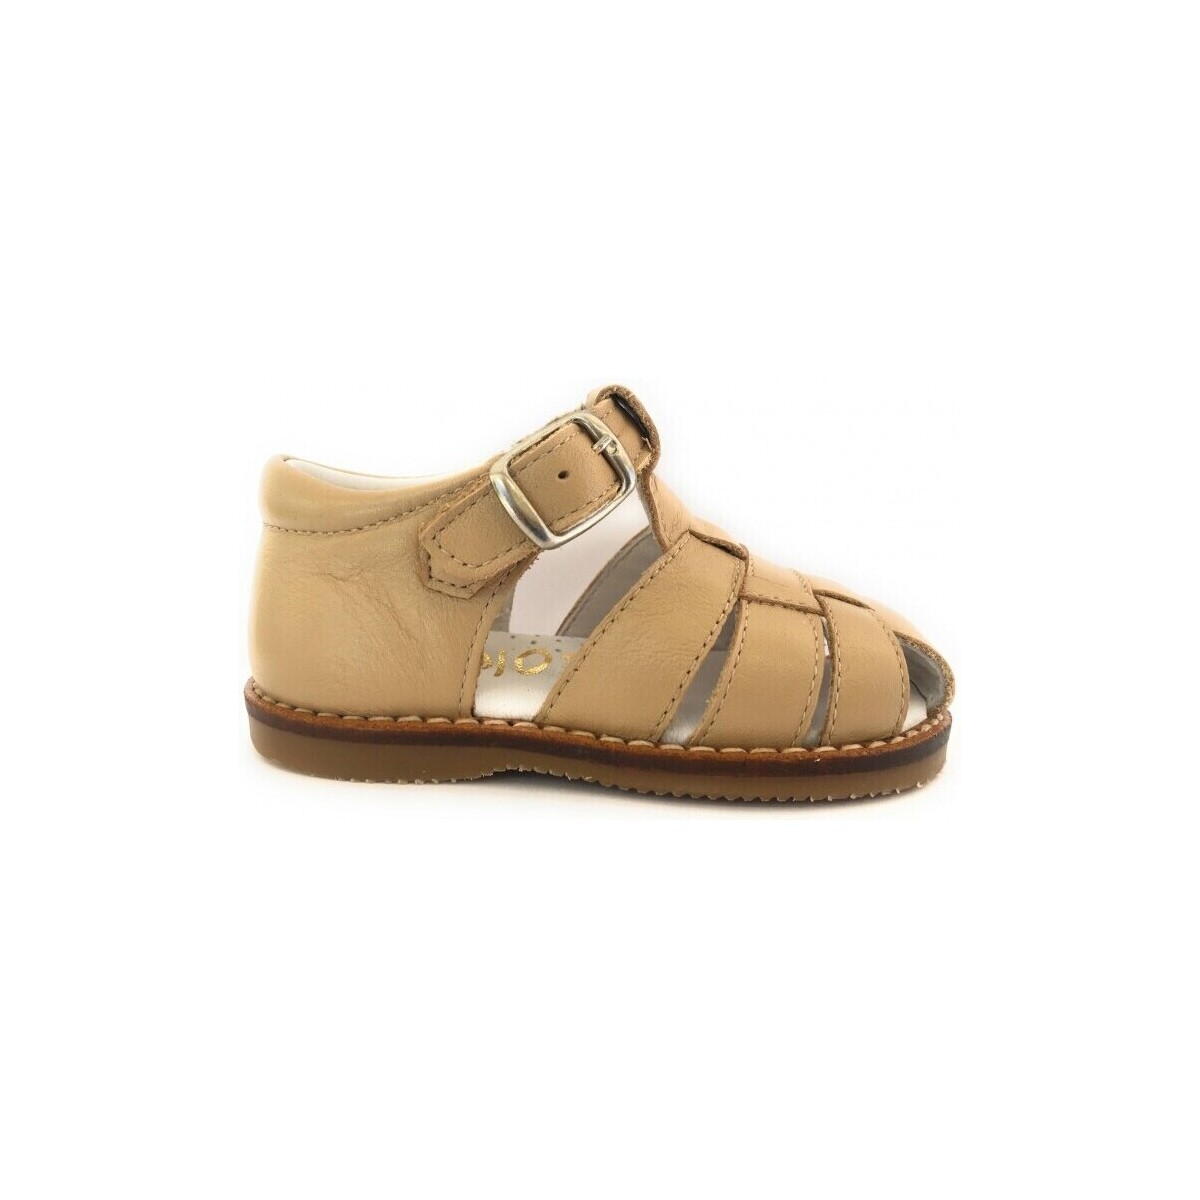 Παπούτσια Σανδάλια / Πέδιλα Gulliver 25325-18 Brown